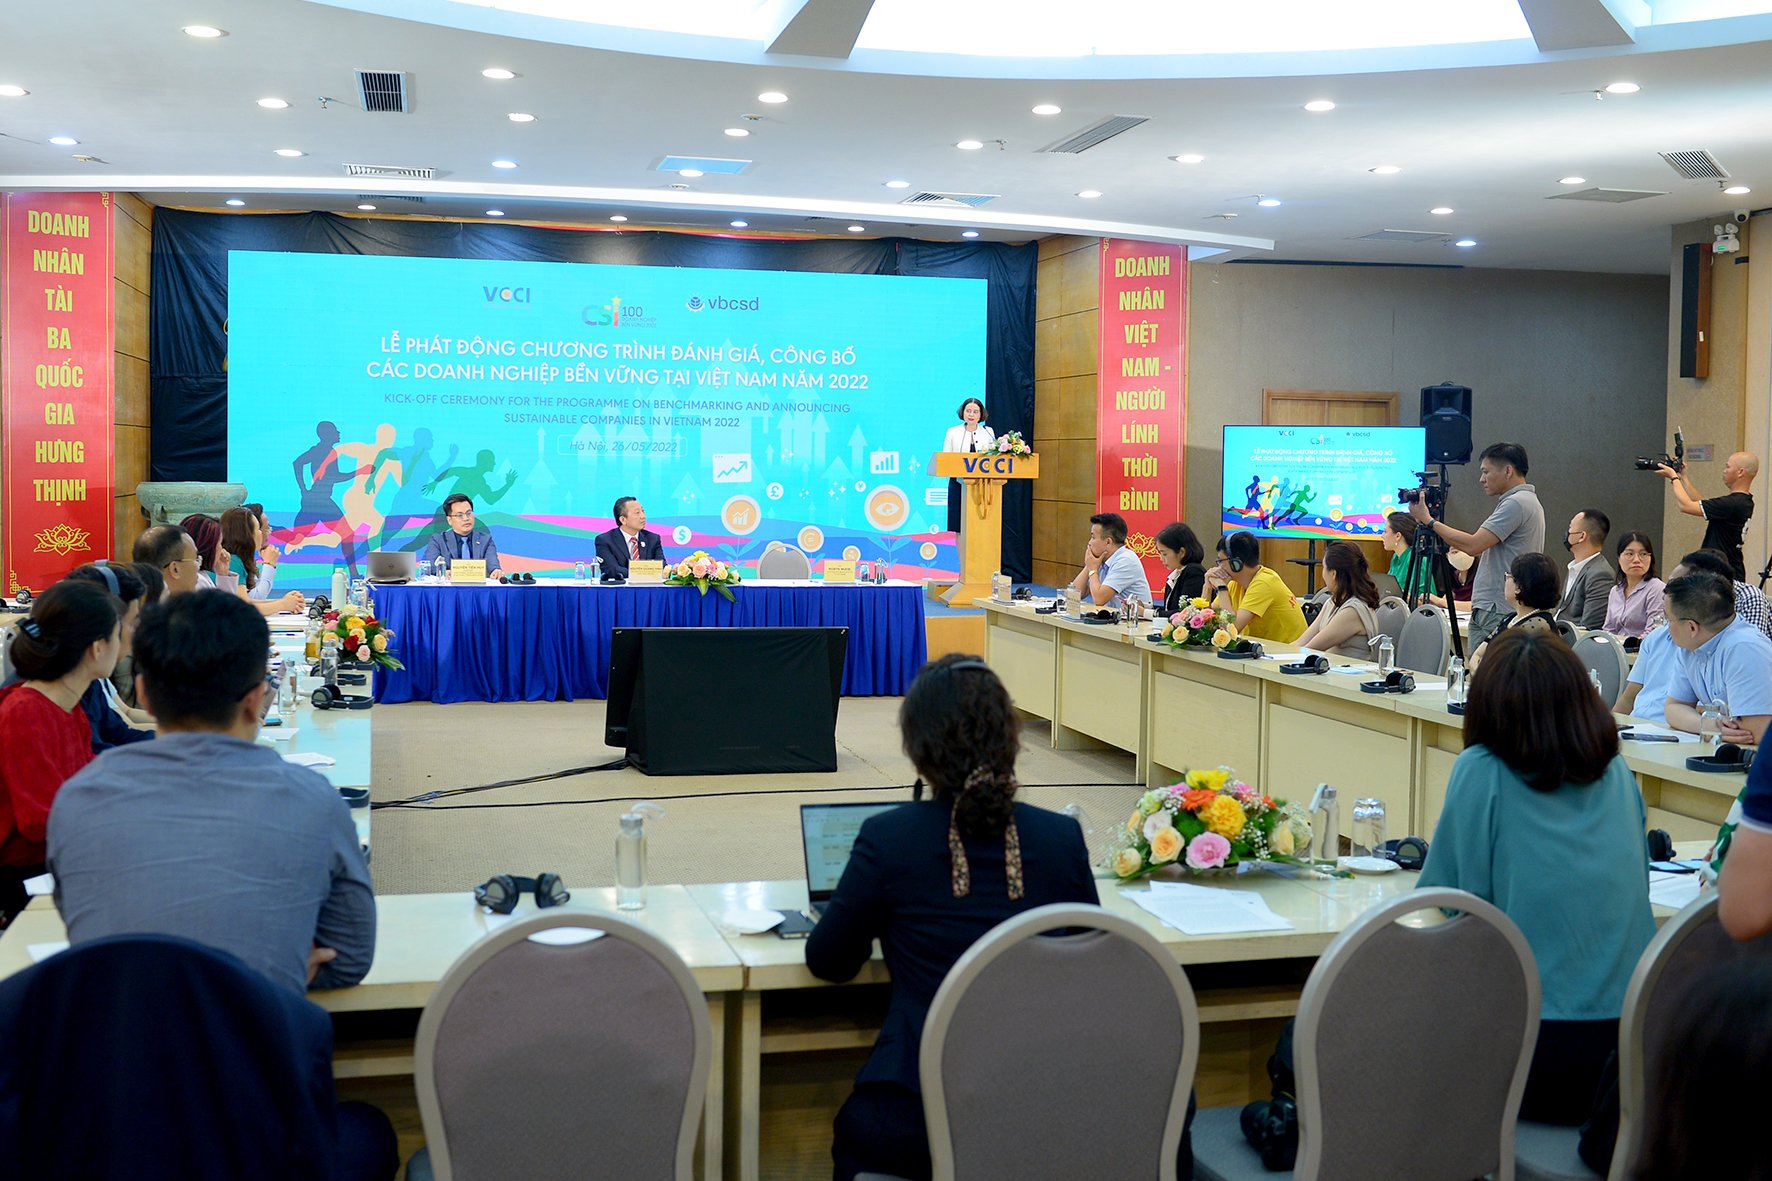 Lễ phát động Chương trình Đánh giá, Công bố Doanh nghiệp bền vững tại Việt Nam năm 2022